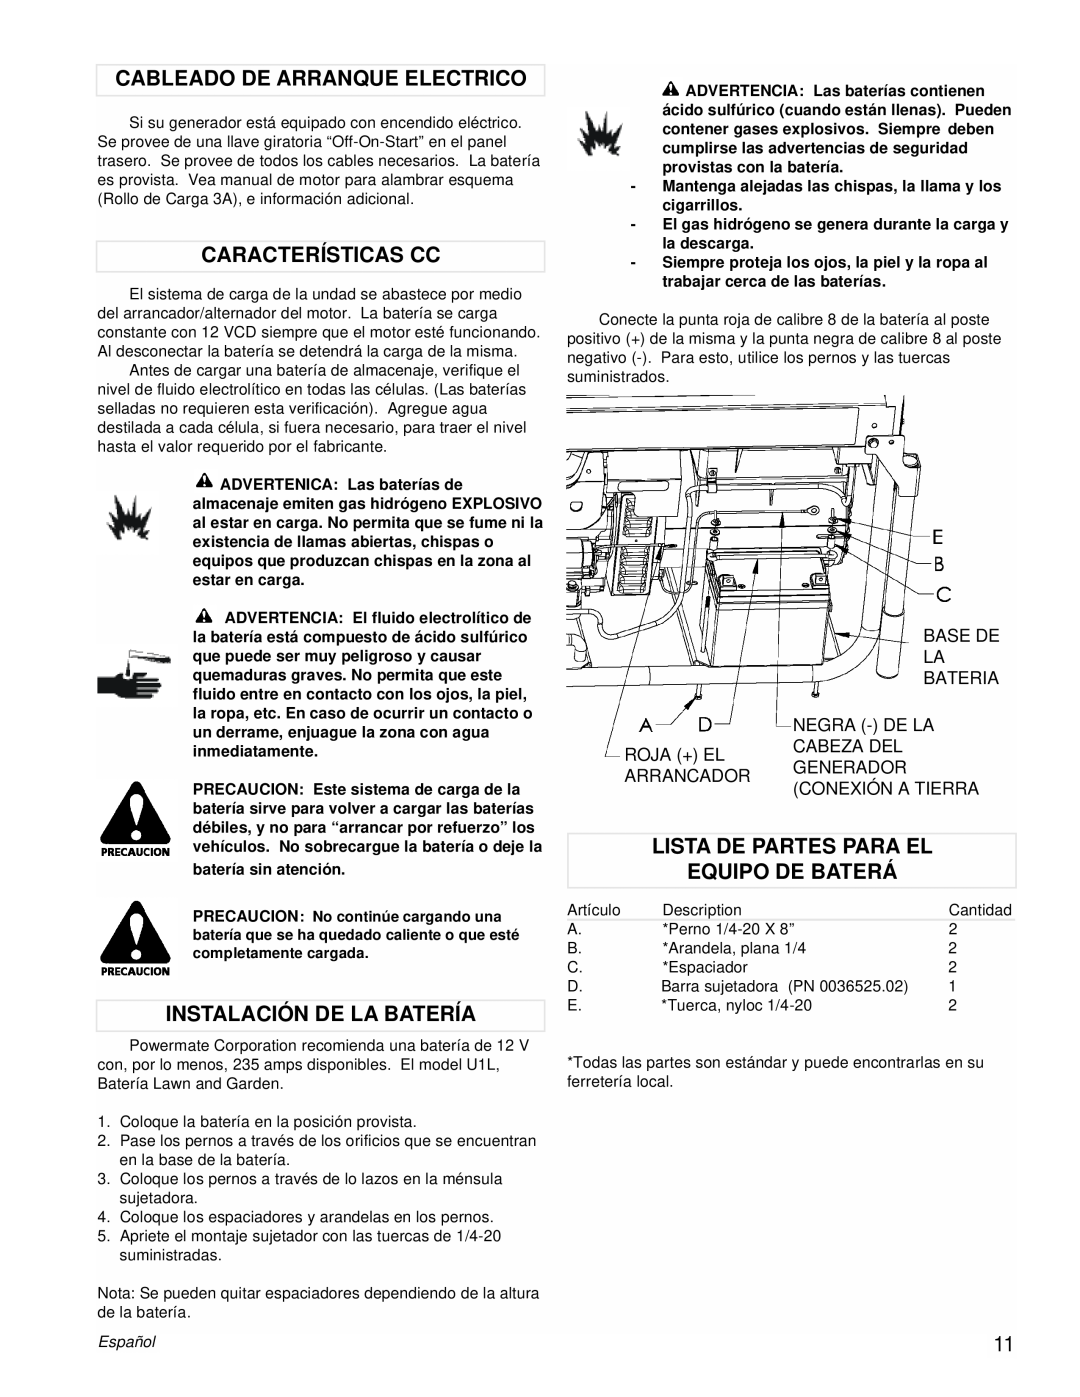 Powermate PMC601200 manual Cableado De Arranque Electrico, Características Cc, Instalación De La Batería, Español 